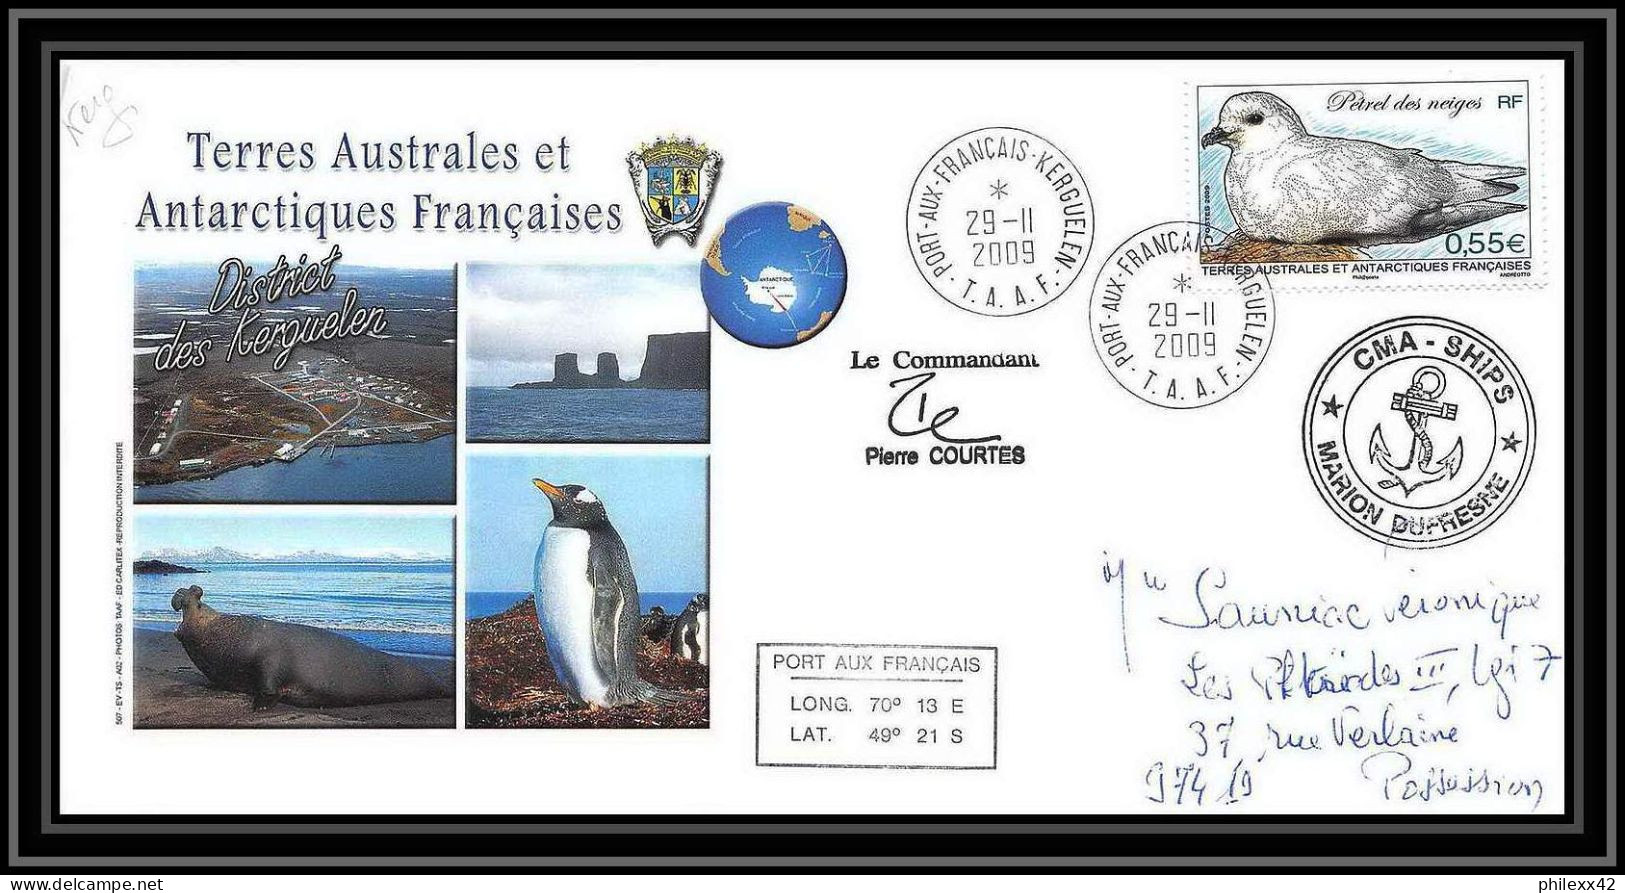 2962 ANTARCTIC Terres Australes TAAF Lettre Dufresne Signé Signed Kerguelen Portes Ouvertes 29/11/2009 N°534 Petrel Bird - Expéditions Antarctiques